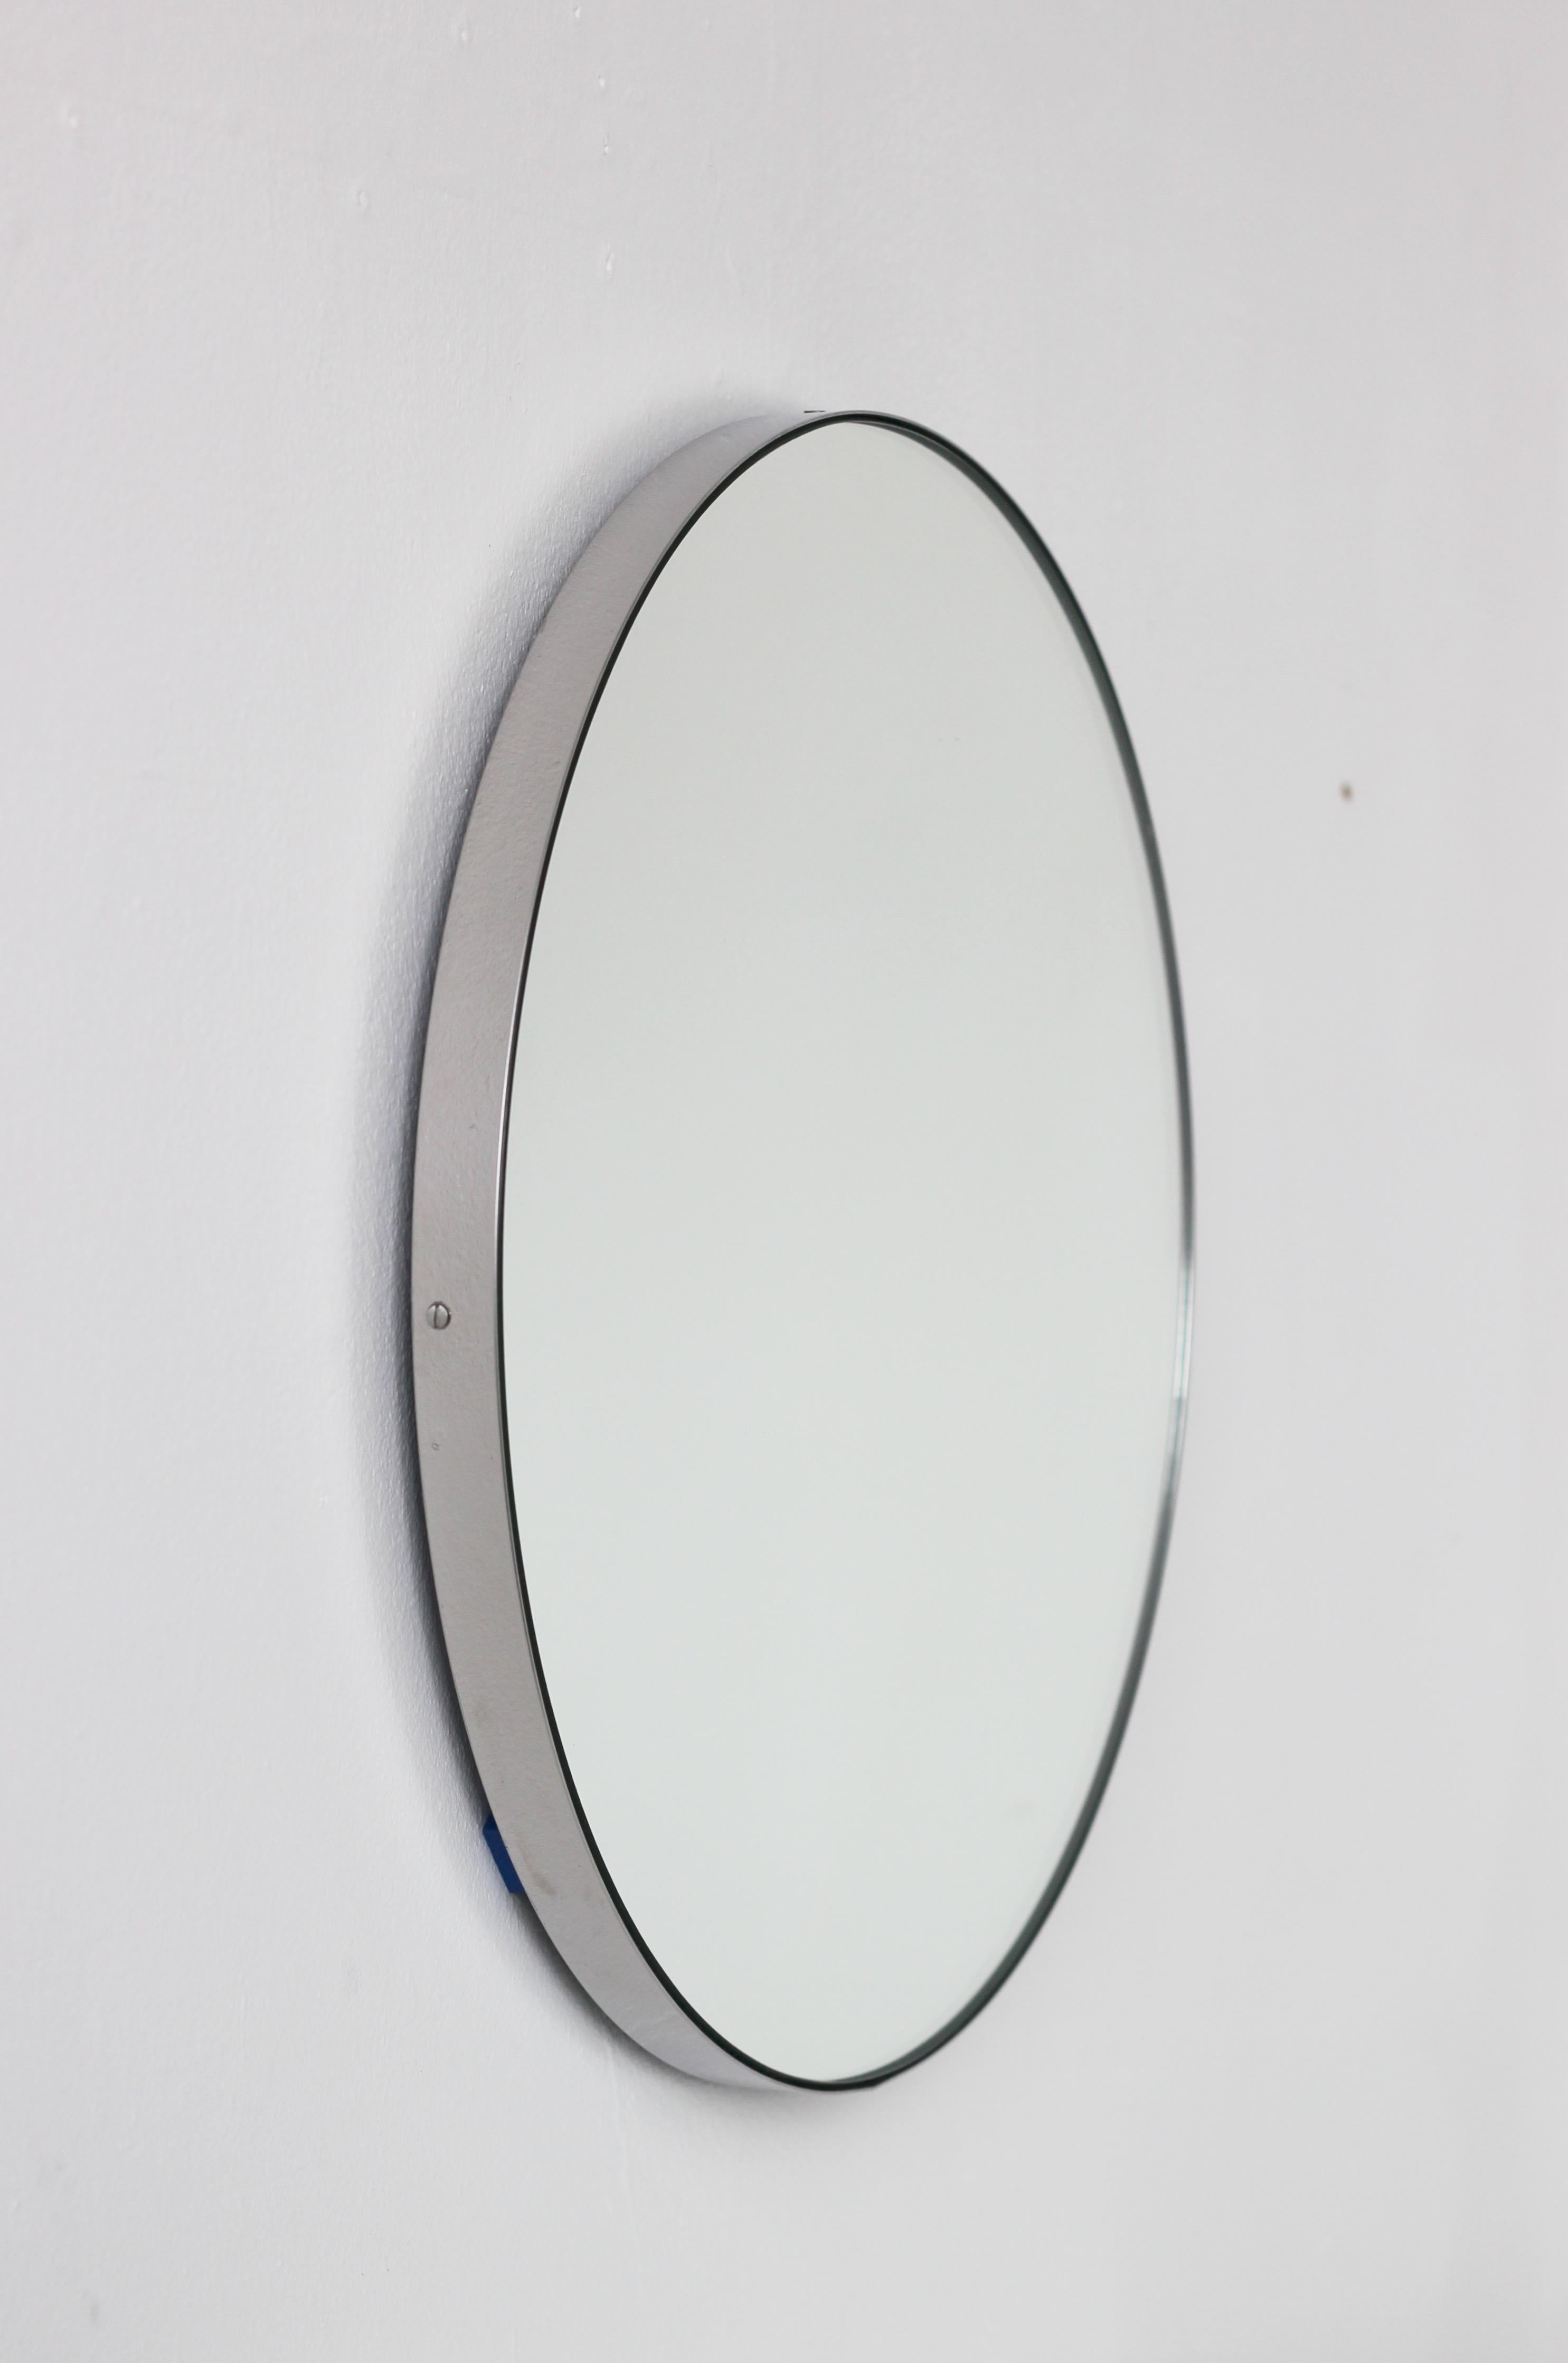 Minimalistischer runder Spiegel mit einem eleganten Rahmen aus gebürstetem Edelstahl (auch in polierter Ausführung erhältlich). Die Details und die Verarbeitung, einschließlich der sichtbaren Schrauben, unterstreichen die handwerkliche und